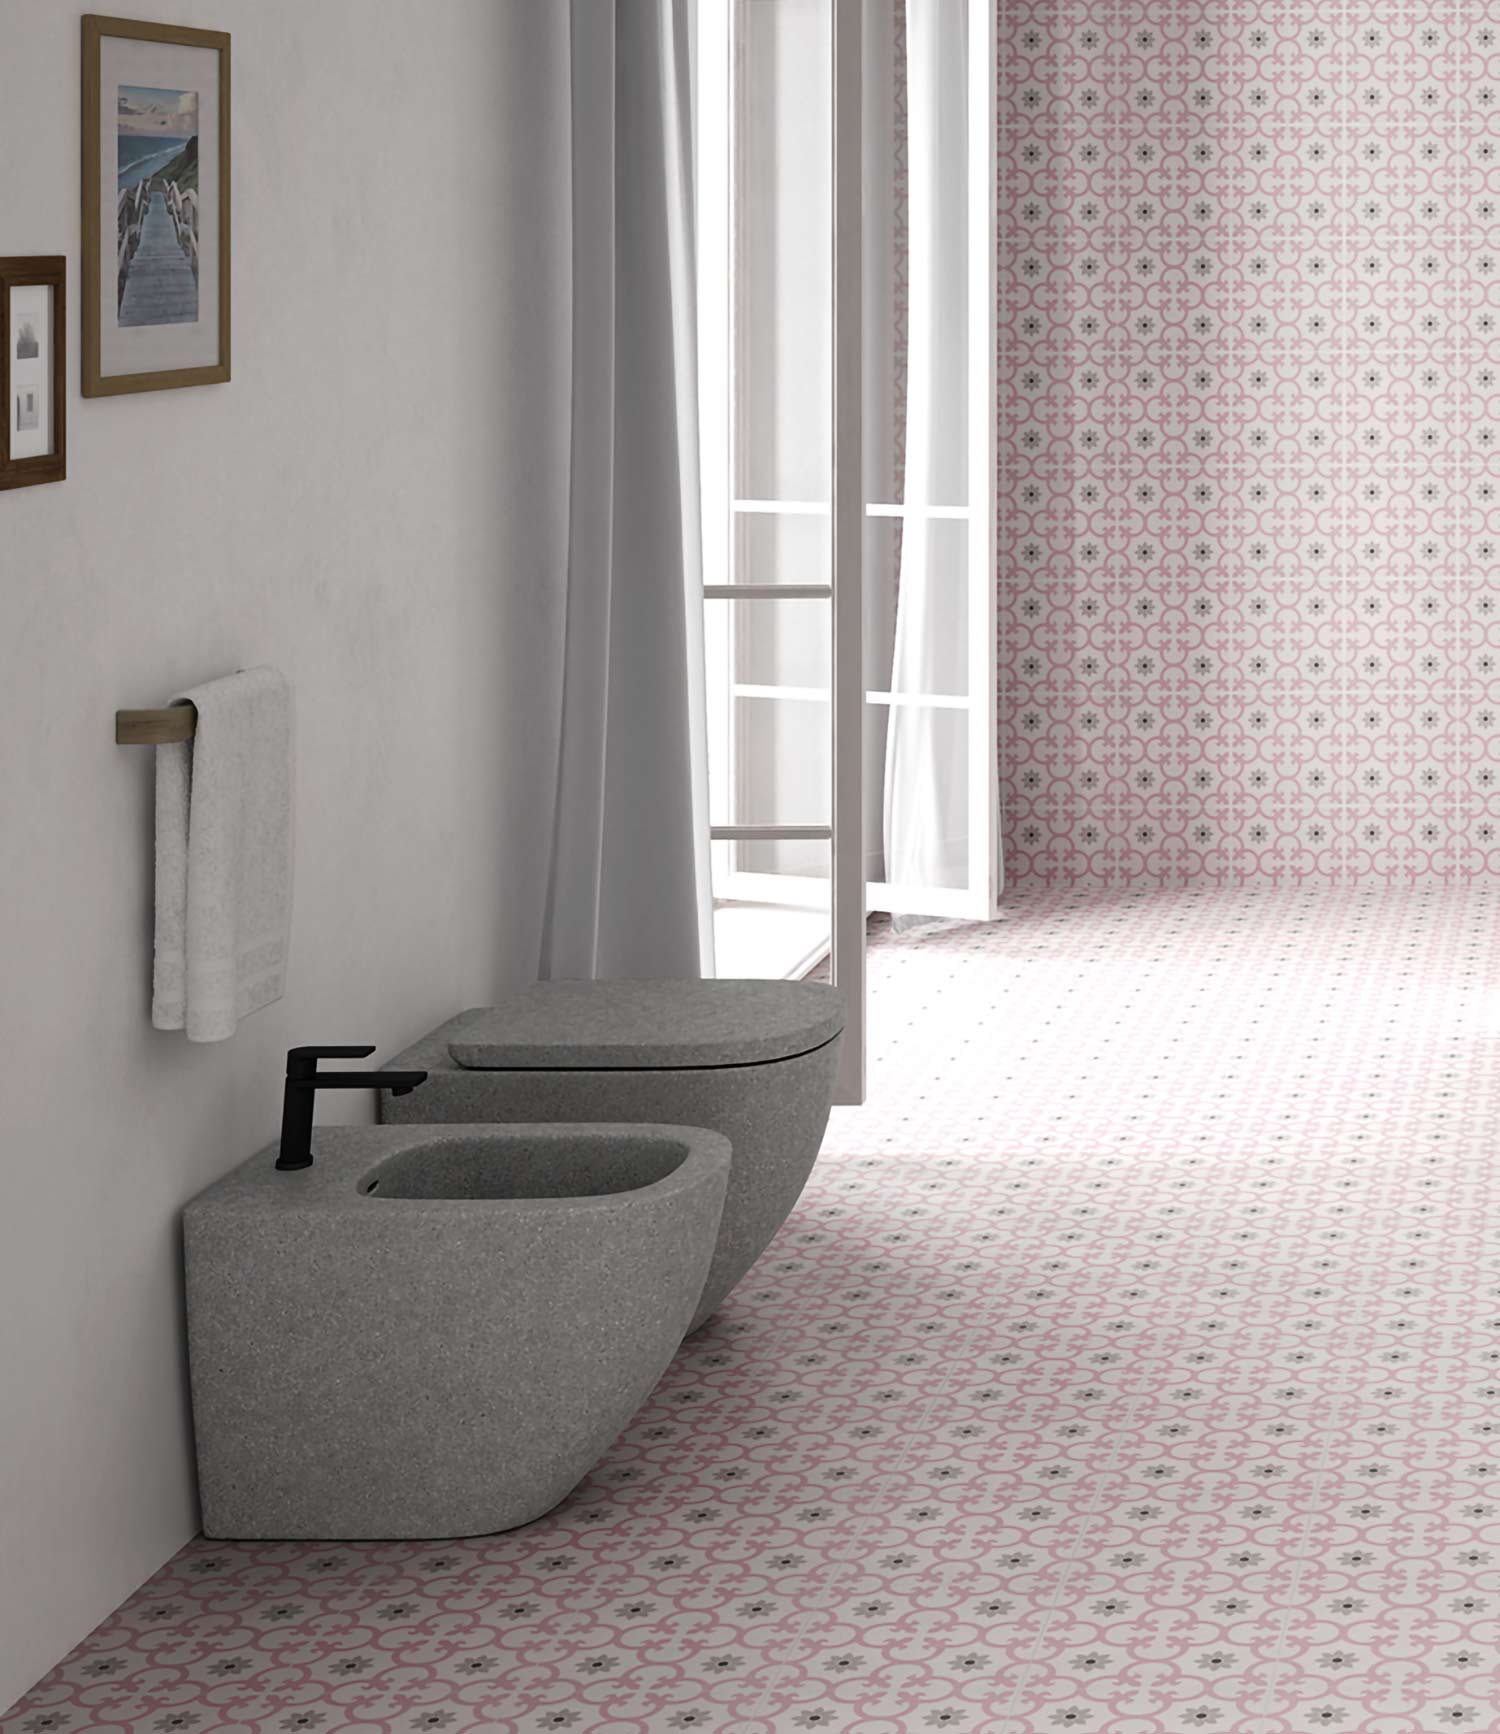 Salle de bain avec toilette et le carrelage sol imitation carreaux de ciment coloris rose